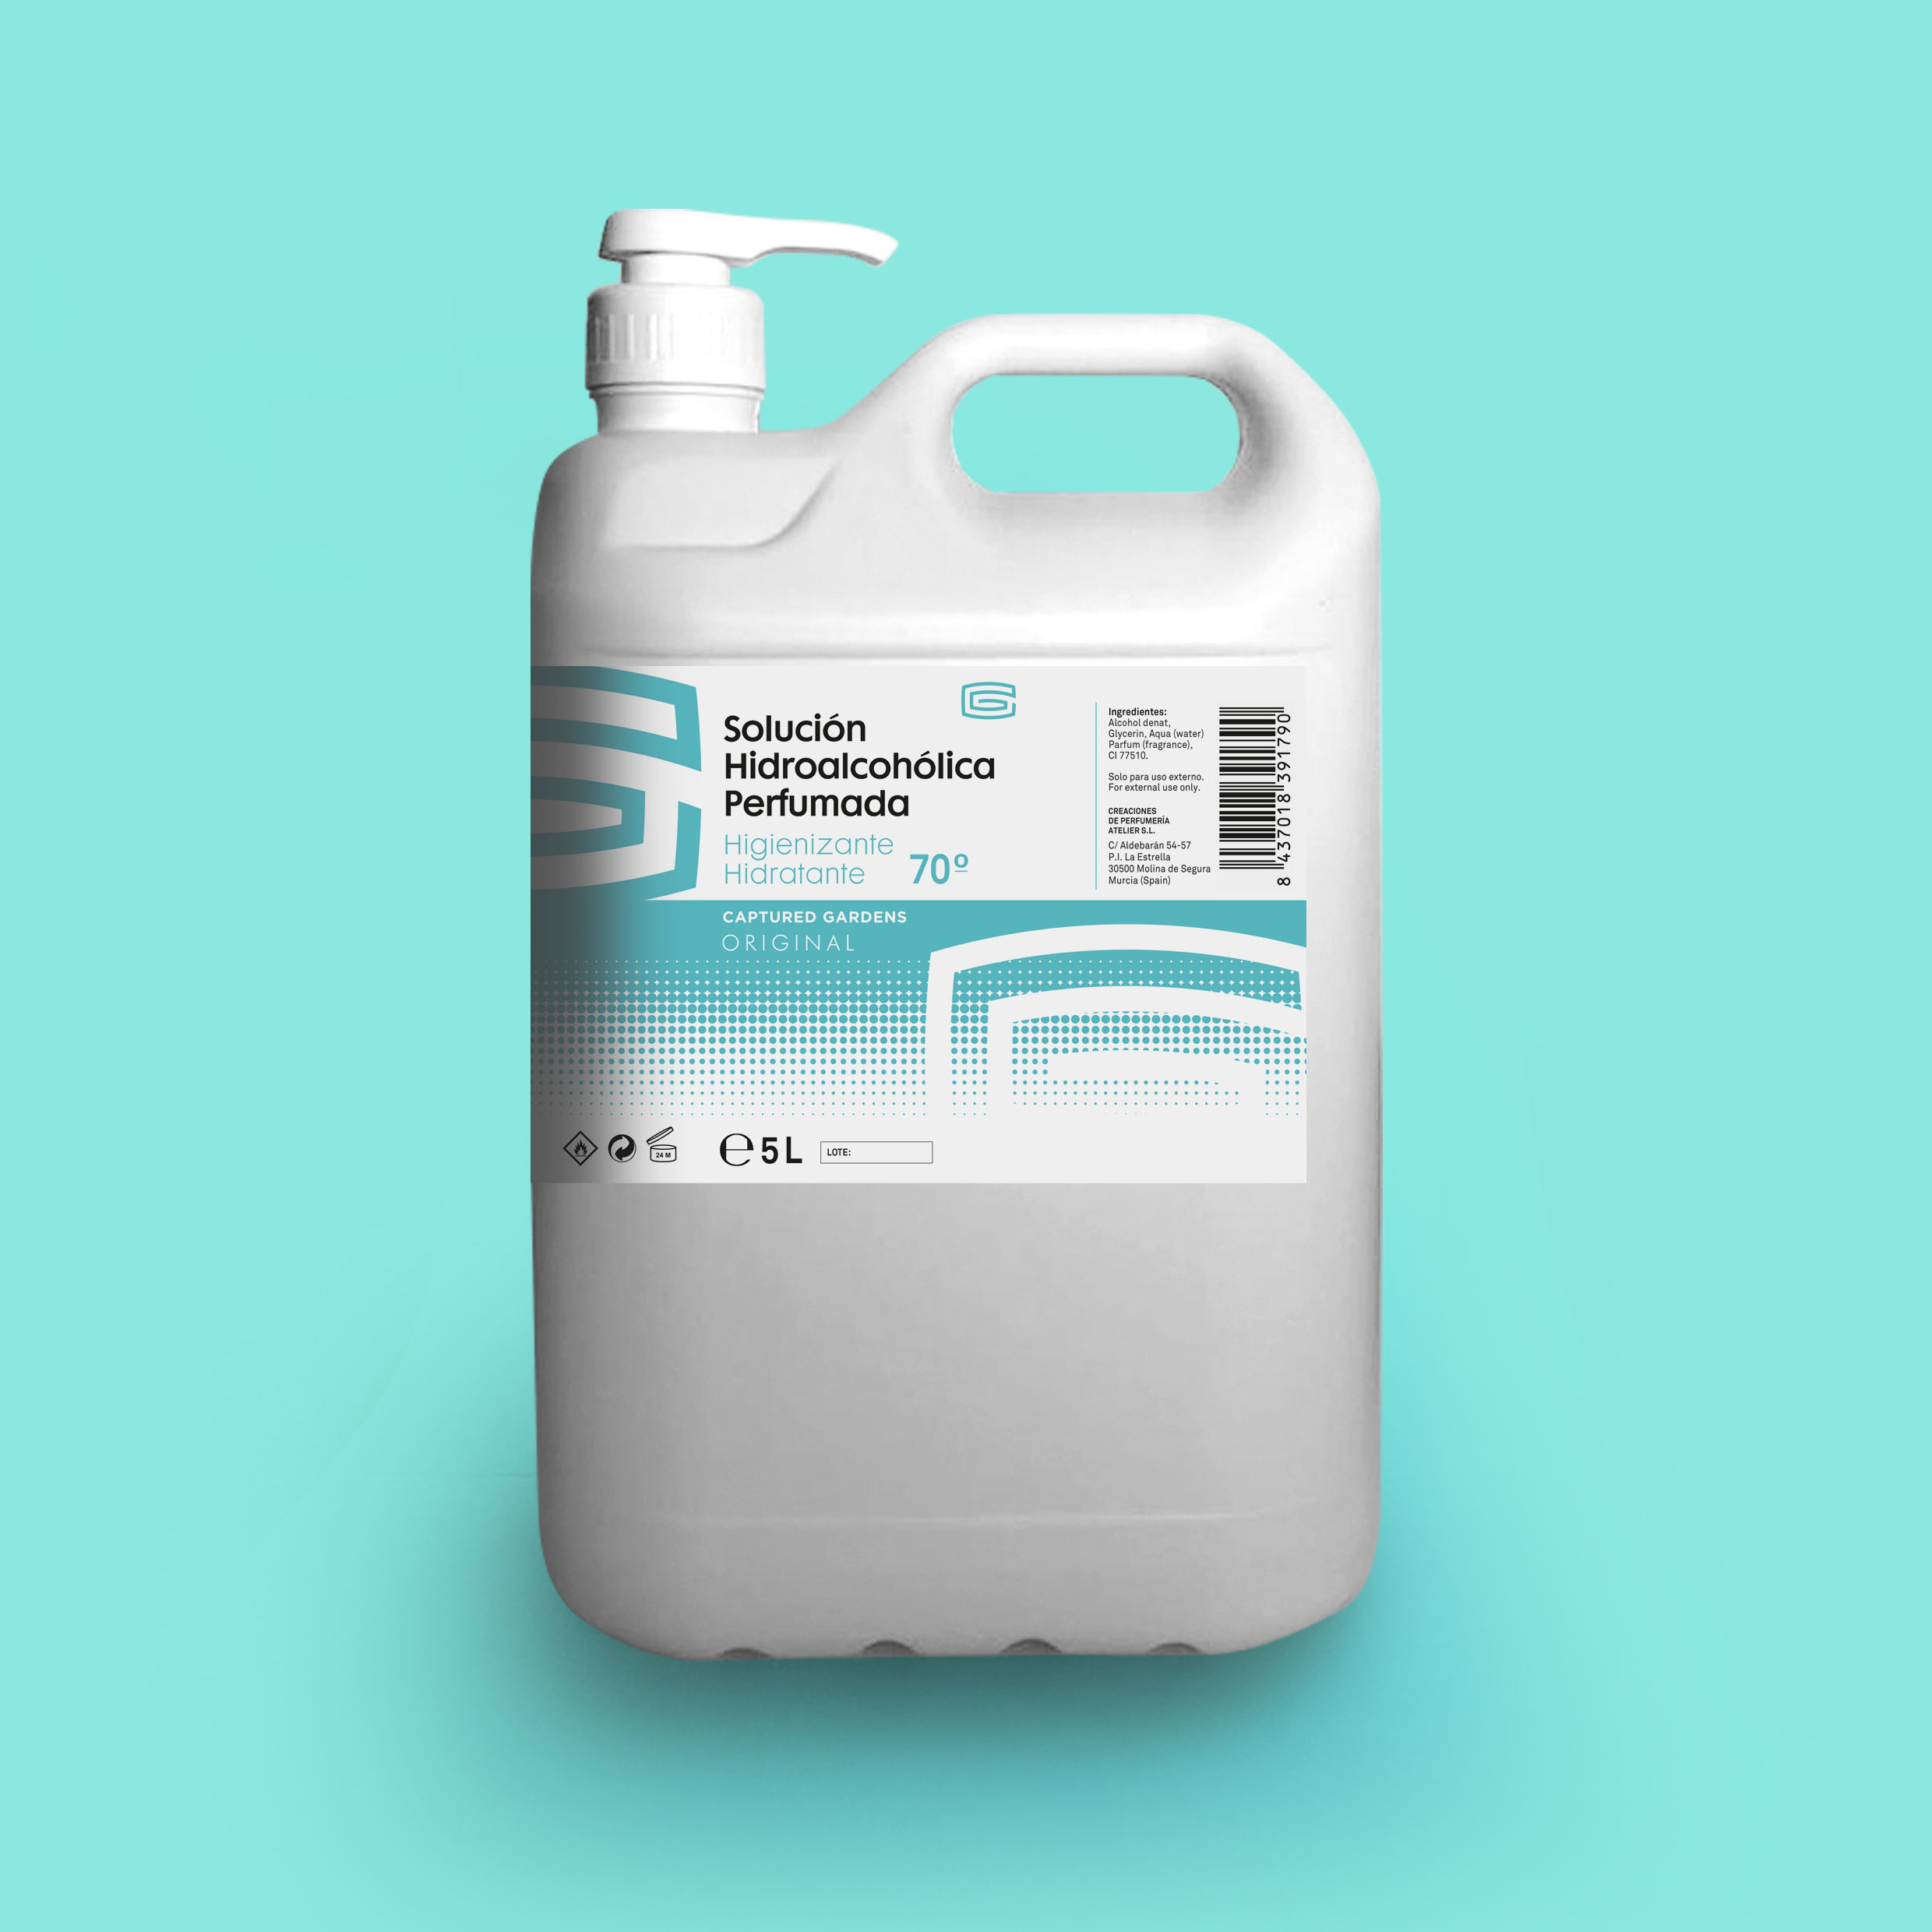 GSolución hidroalcohólica diseño de etiquetas